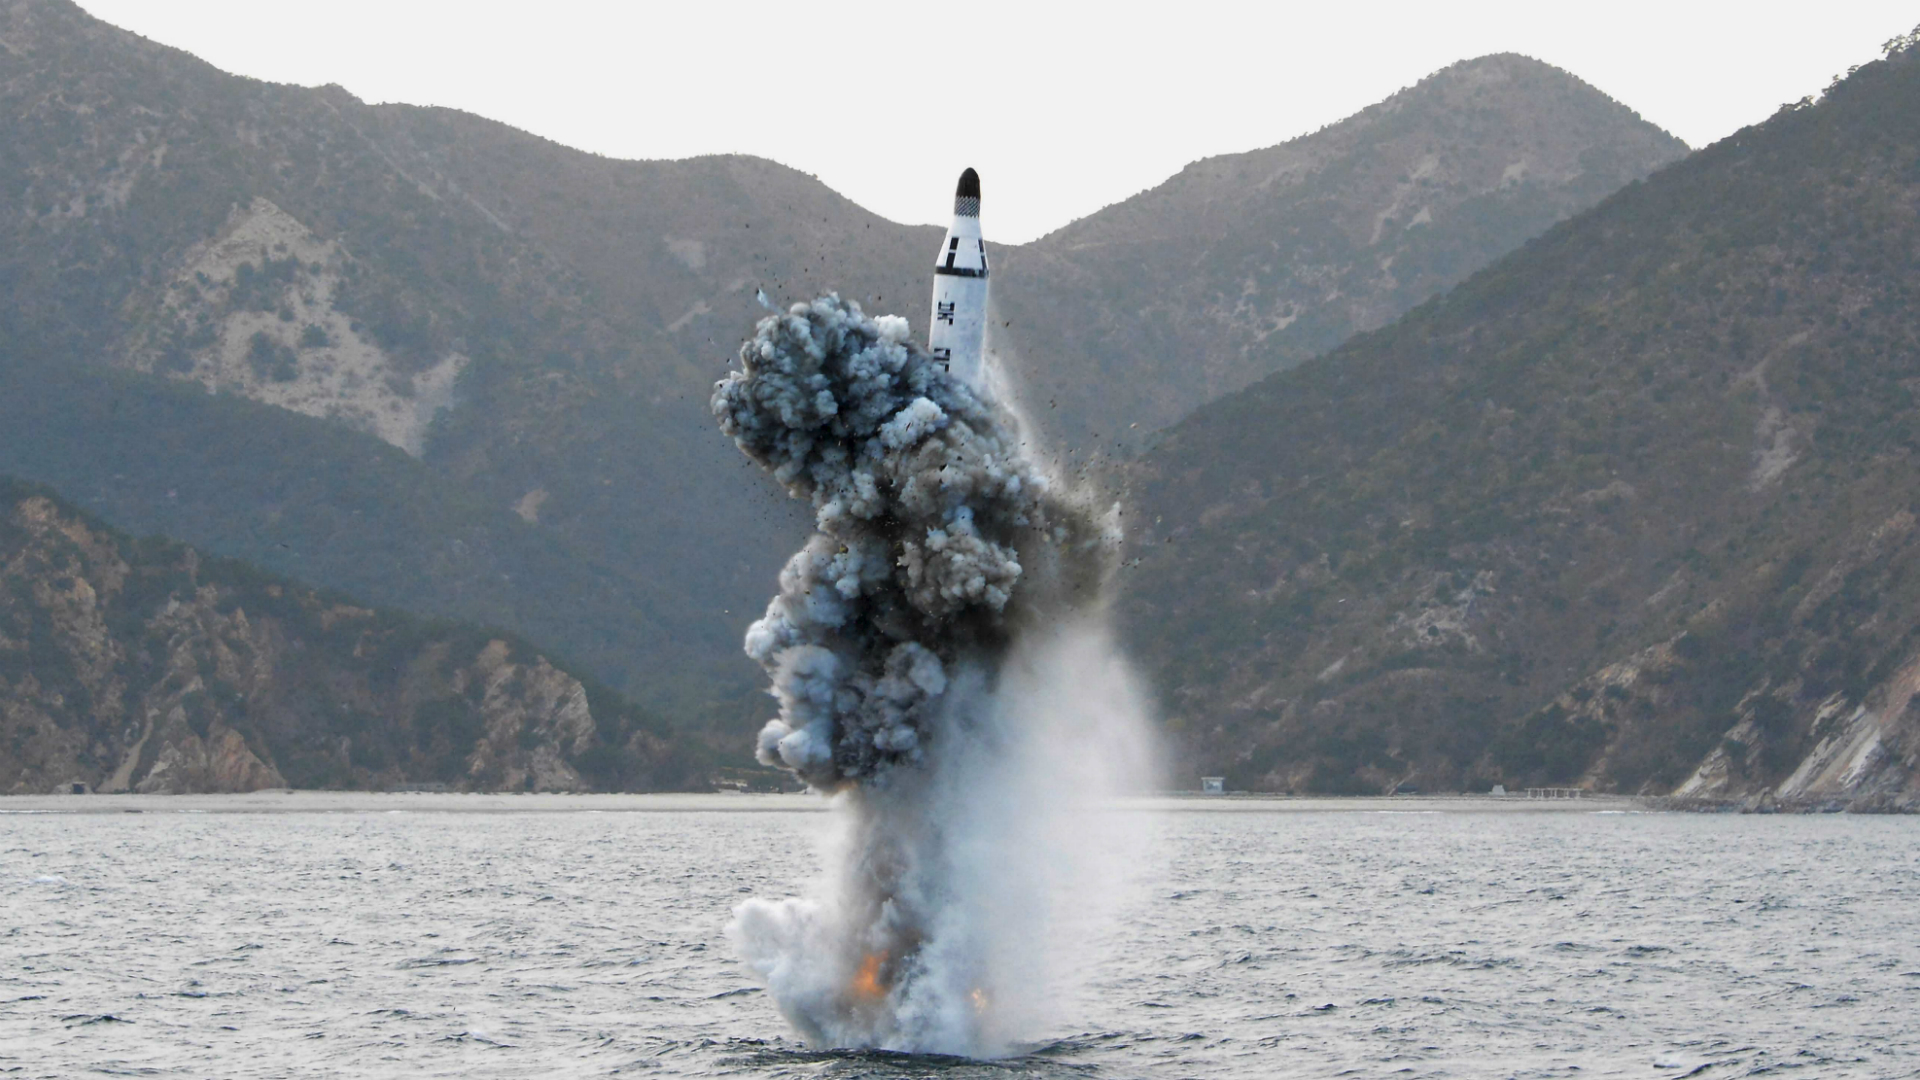 Corea del Sur aseguró que el régimen de Kim Jong-un “pagará por sus provocaciones” tras el disparo de un drone submarino